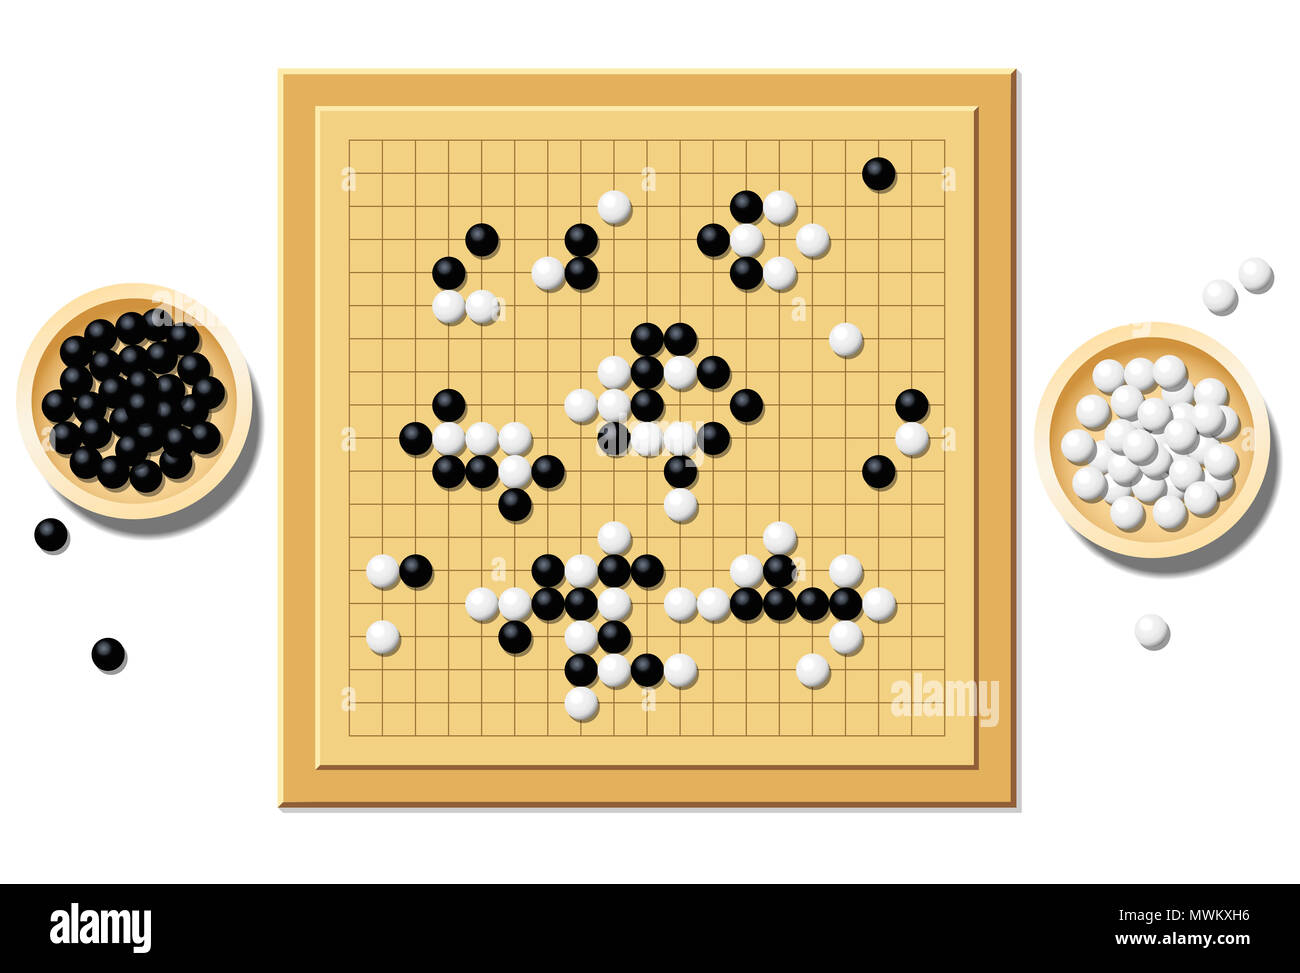 Gobang oder Spielbrett mit einer typischen Verlauf des Spiel gehen, und zwei hölzerne Schüsseln mit schwarzen und weißen Steinen - einem traditionellen chinesischen Strategie Spiel gefüllt. Stockfoto